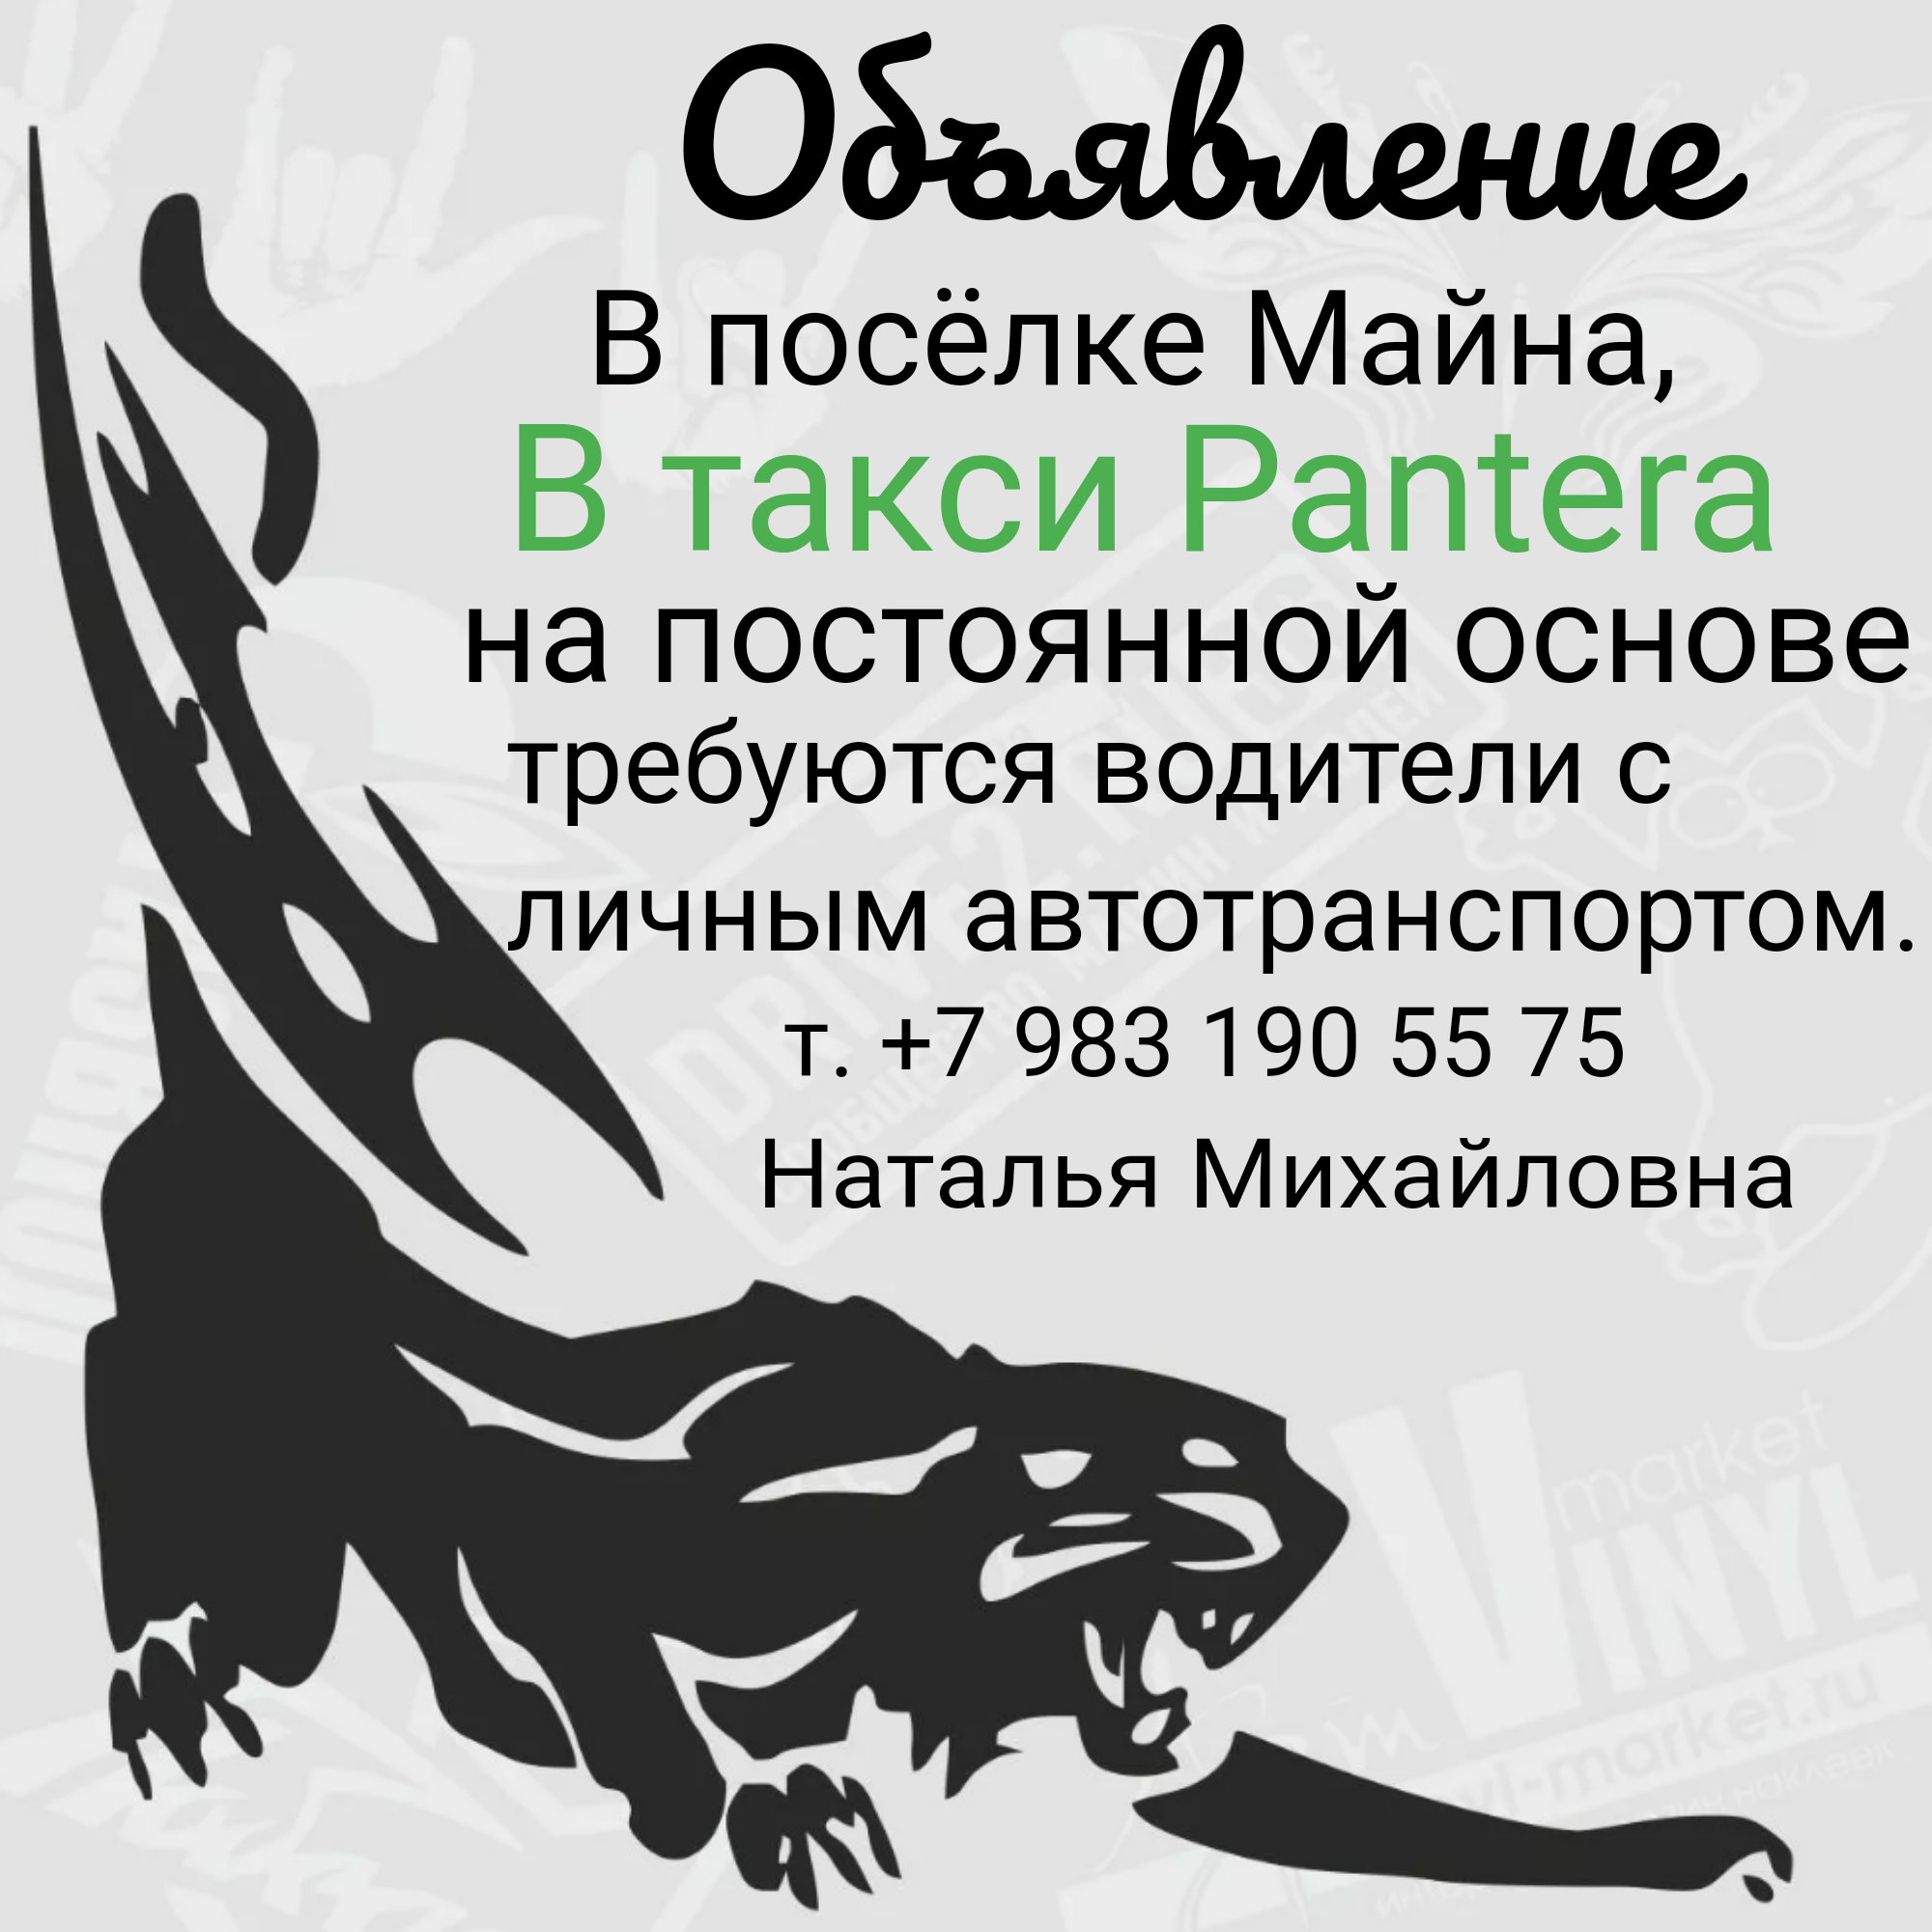 Саяногорск Инфо - logo3_5_6263.jpeg, Скачано: 45